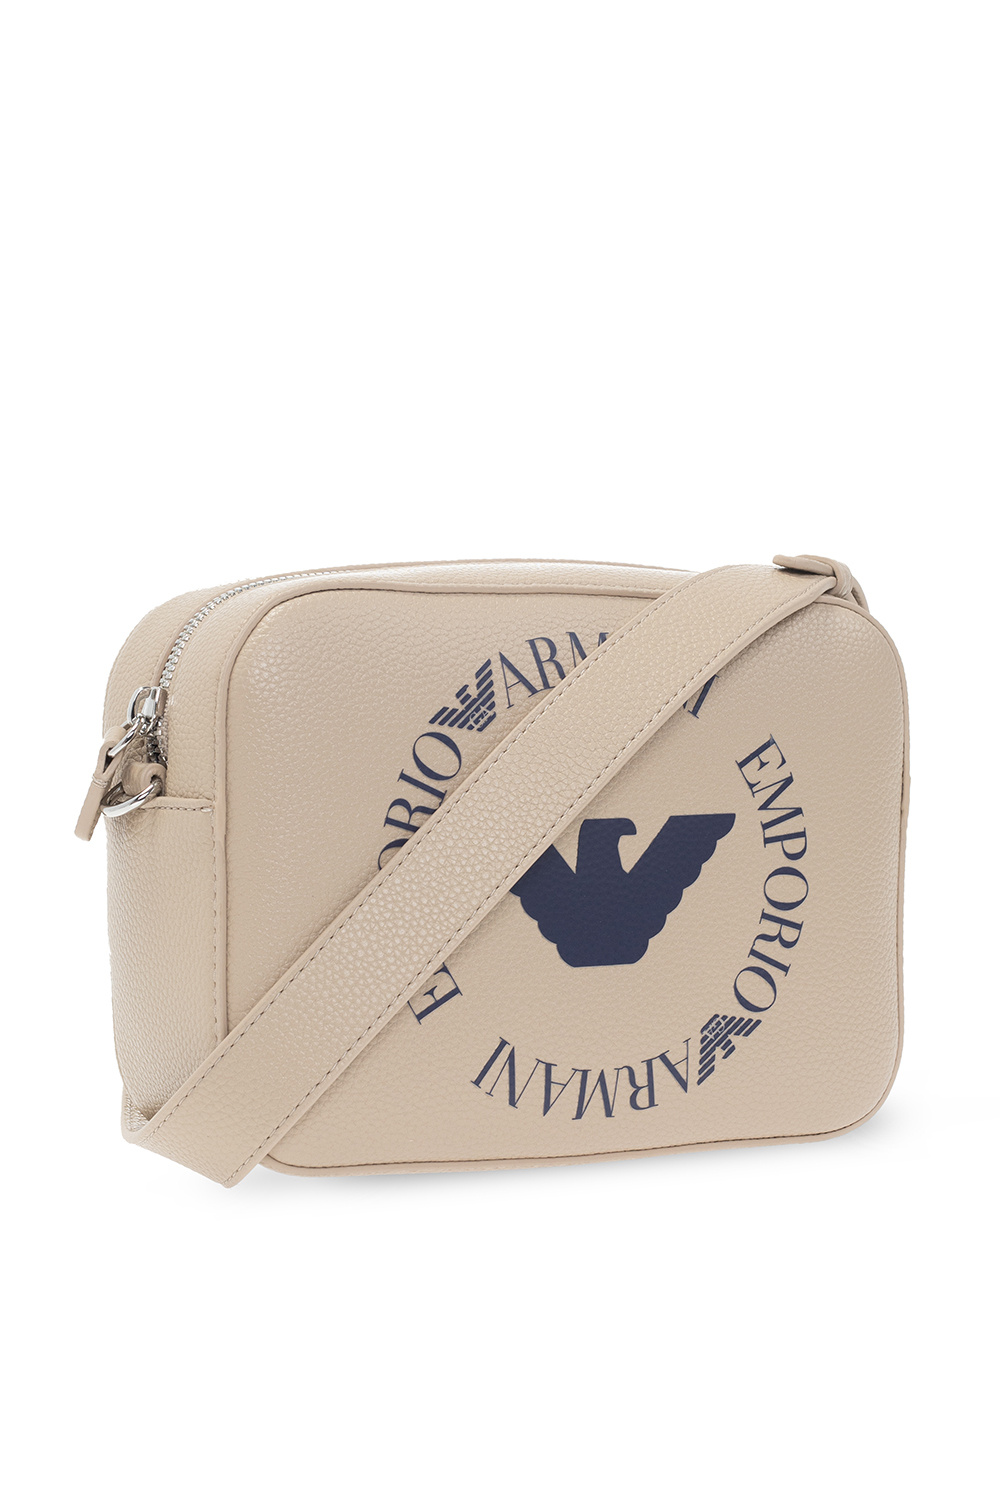 Emporio armani front Shoulder bag with logo